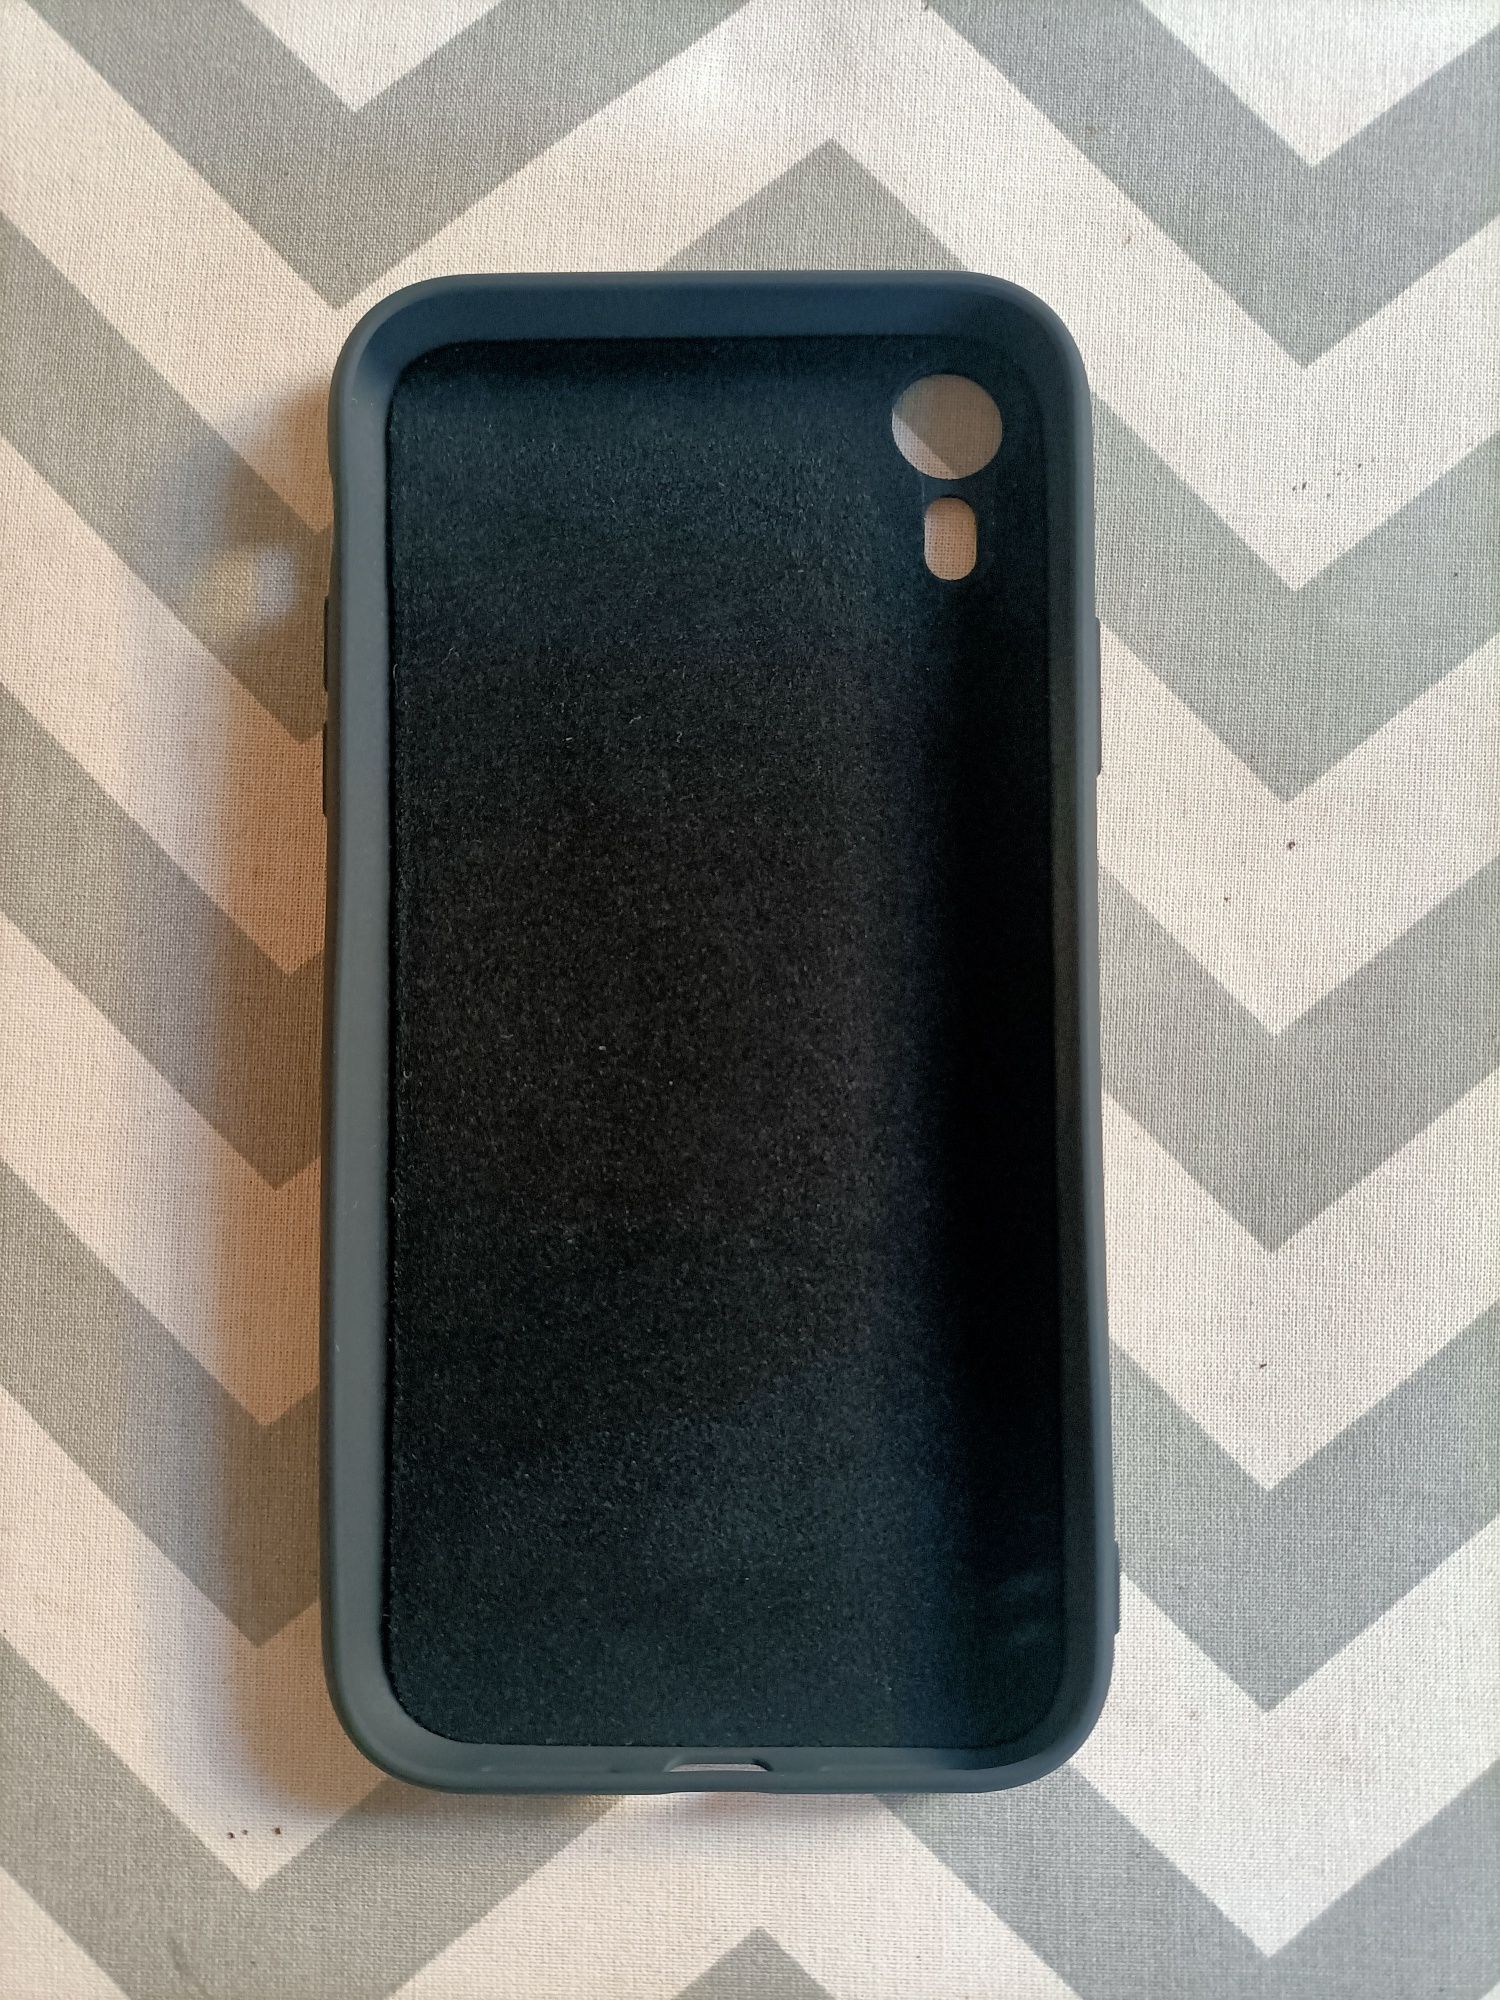 Capa em silicone para iPhone XR preta